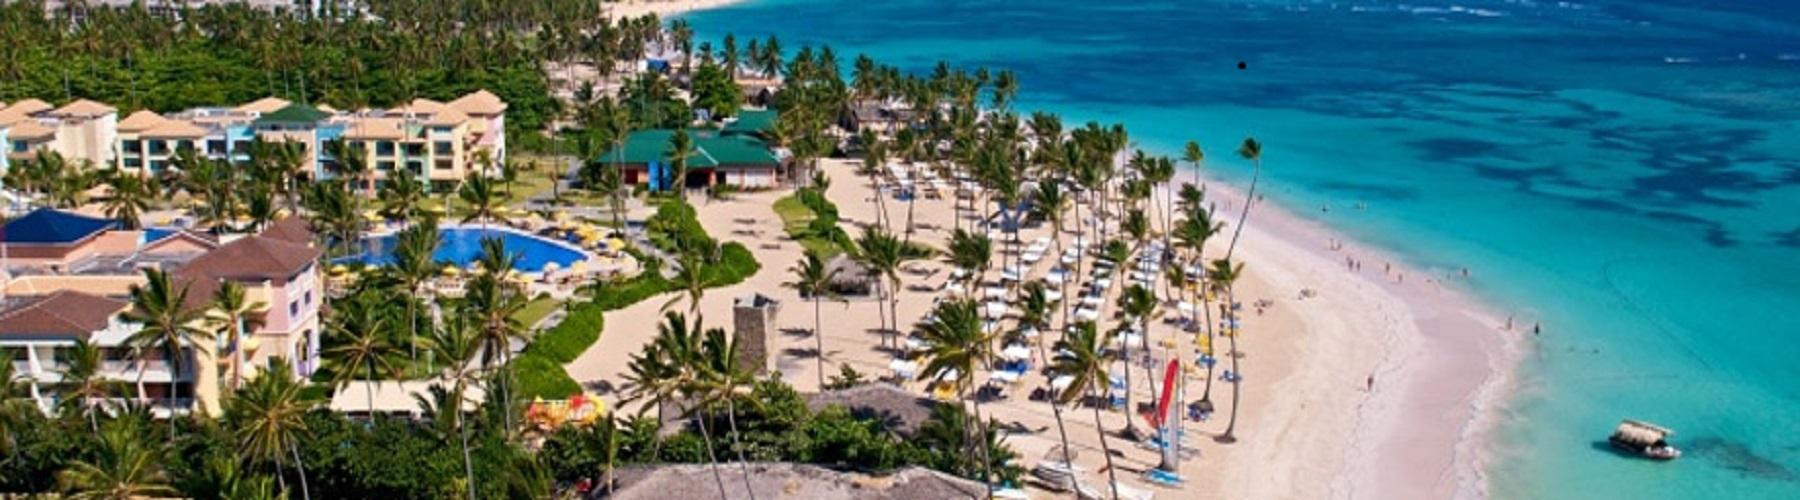 Отель в Доминикане Ocean Blue and Sand 5*